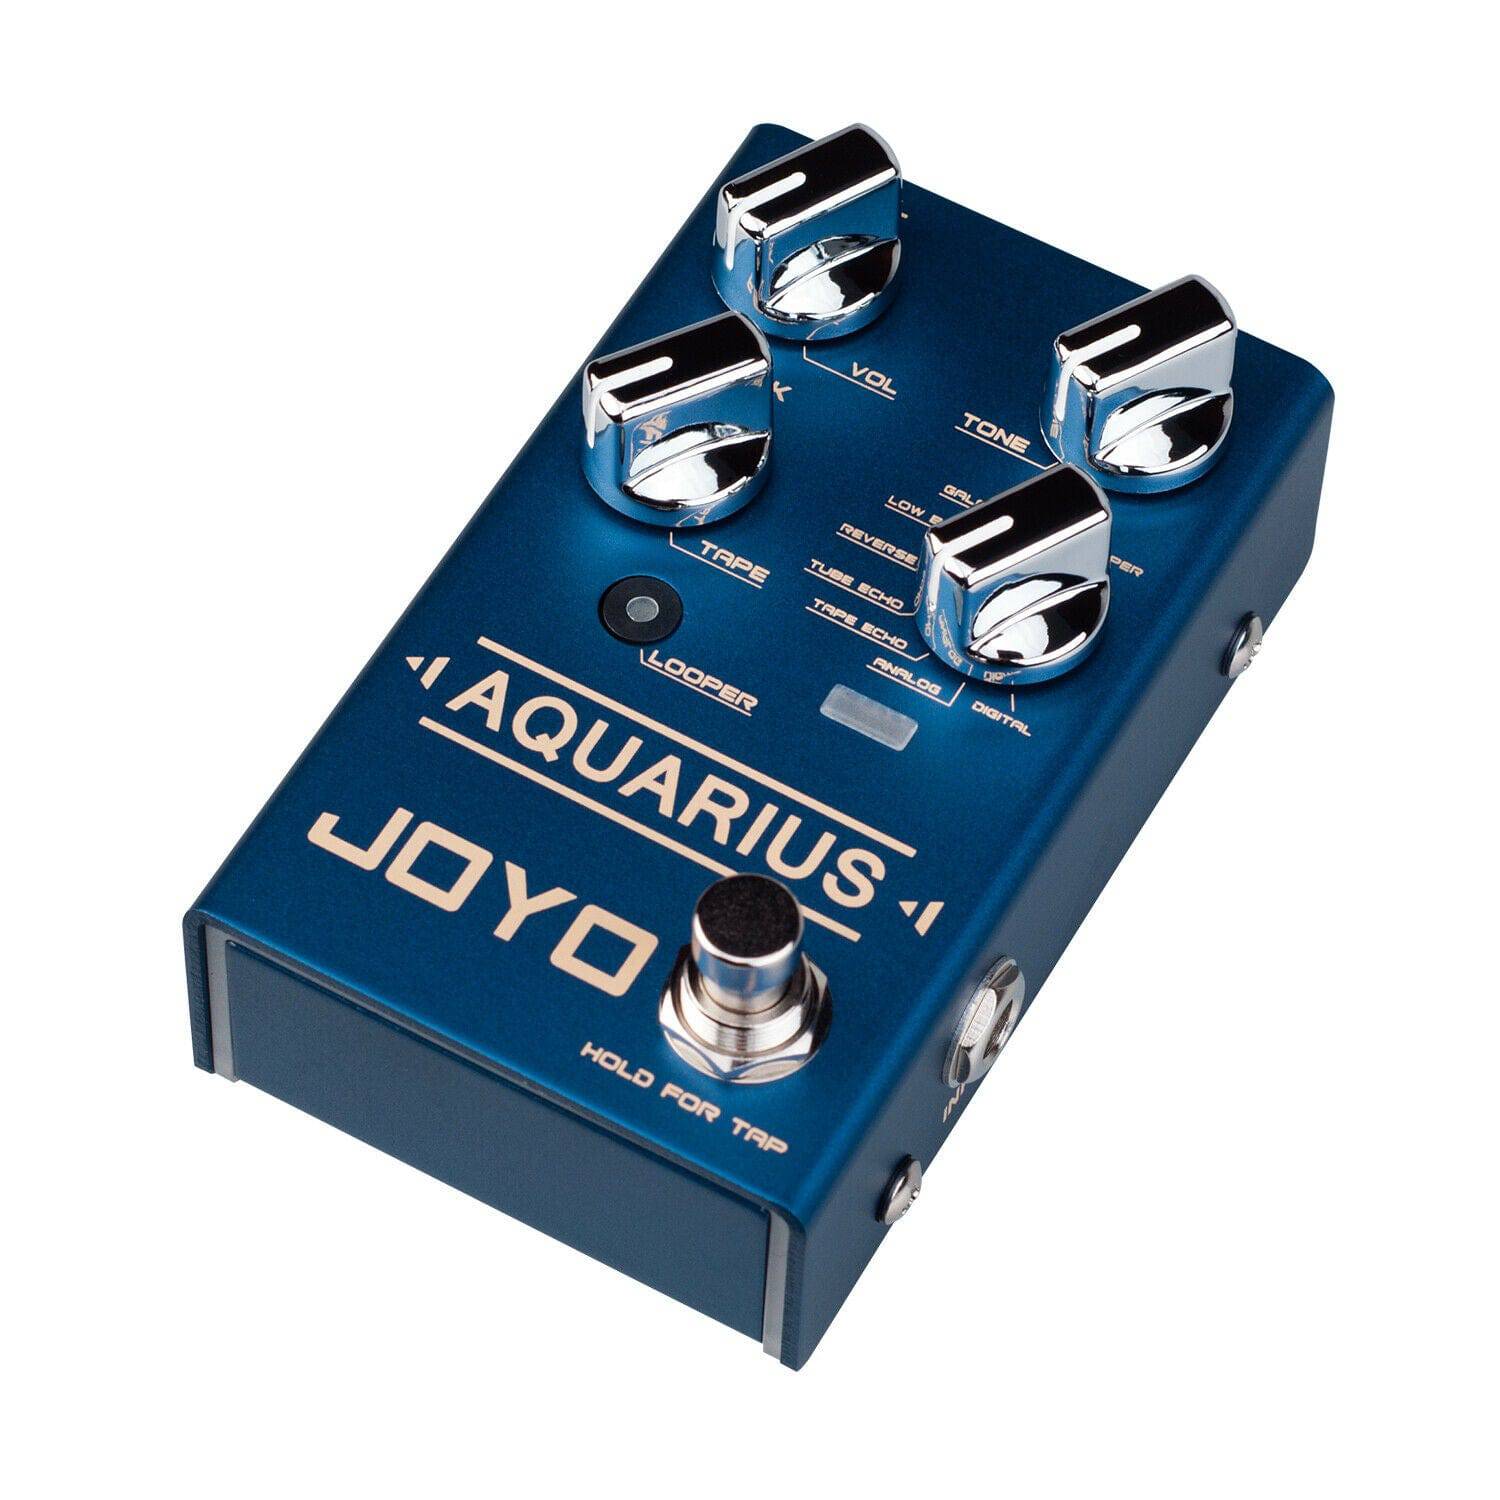 Joyo R-07 Aquarius Guitar Delay and Loop Pedal